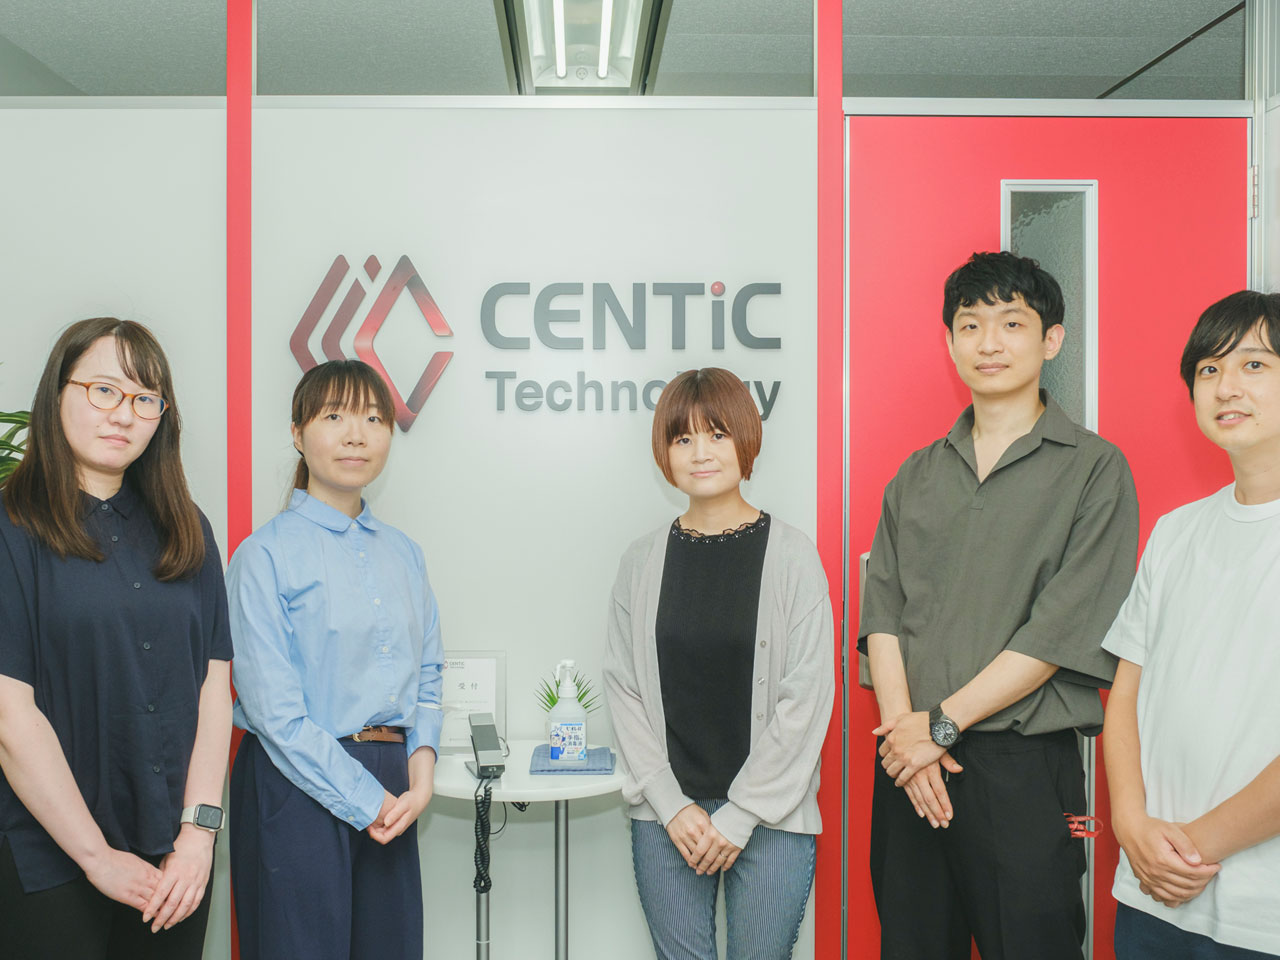 同社は、東京と札幌にオフィスを展開するシステム開発会社。立ち上げメンバーがシステム開発の上流工程の経験者であり、企画フェーズから開発、運用までを一社で提供している。